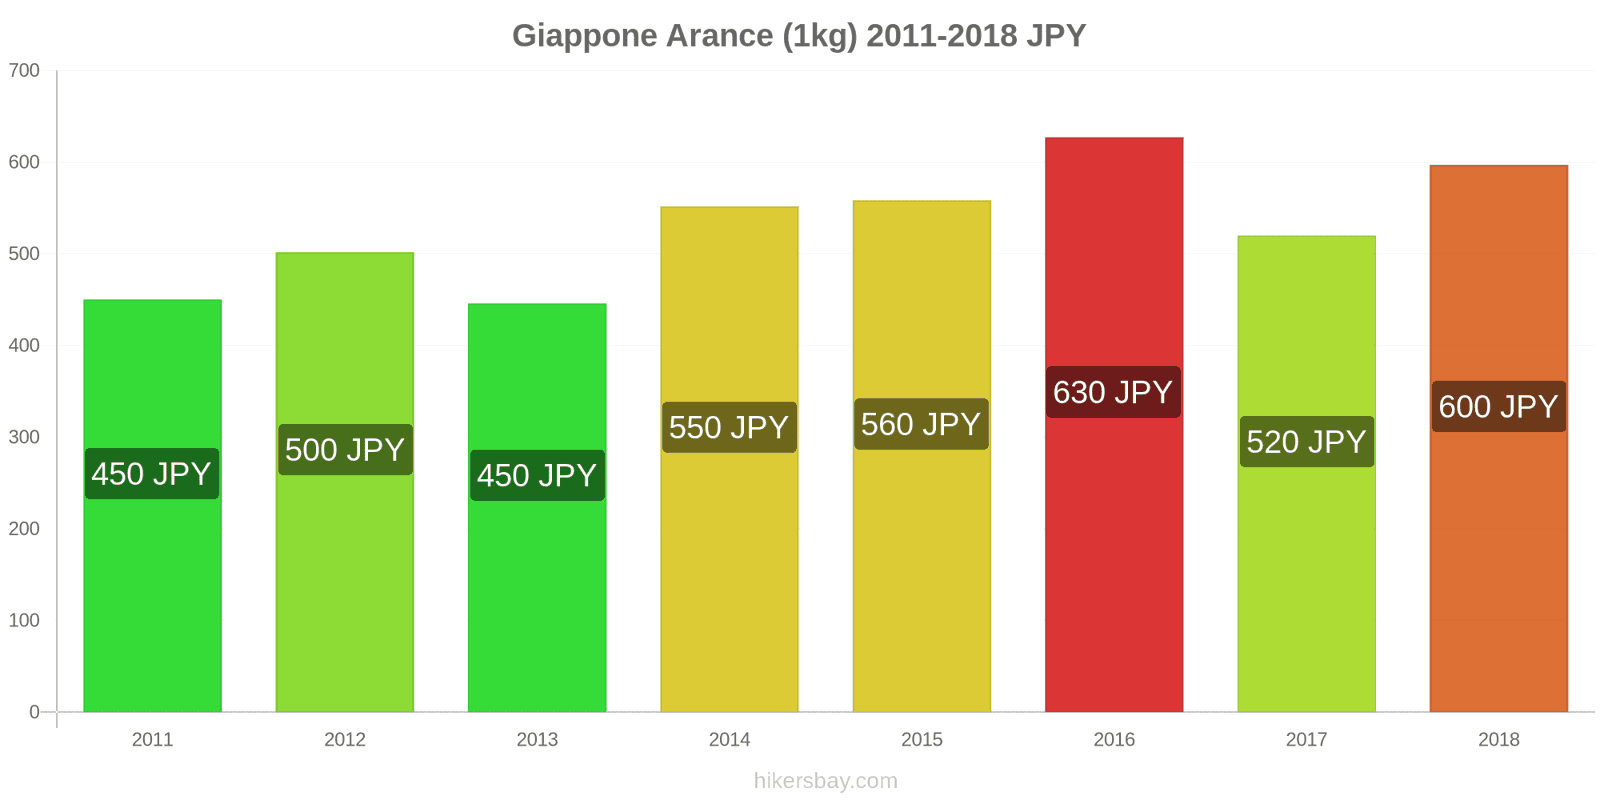 Giappone cambi di prezzo Arance (1kg) hikersbay.com